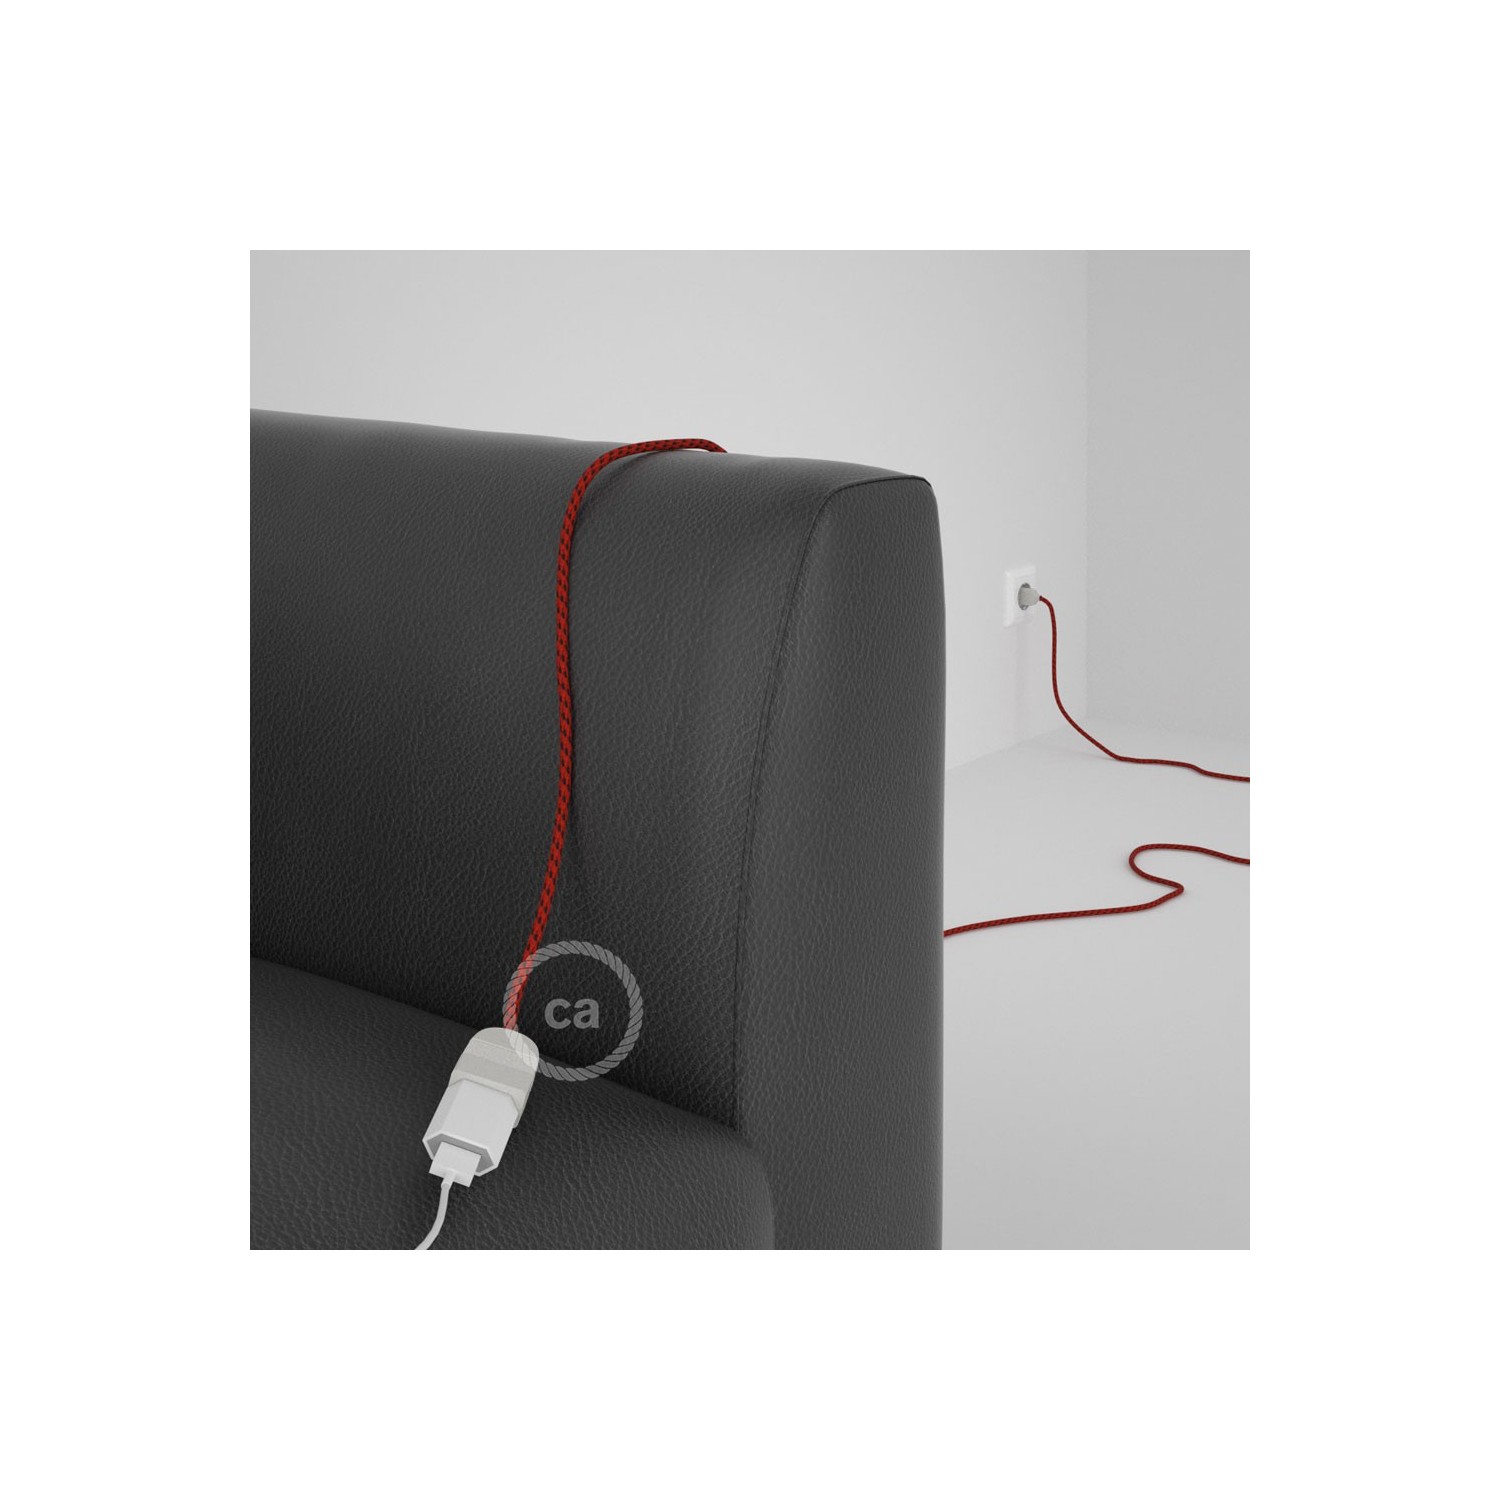 Podaljševalni kabel za napajanje (2P 10A) rdeči vrag rejon RT94 - Made in Italy